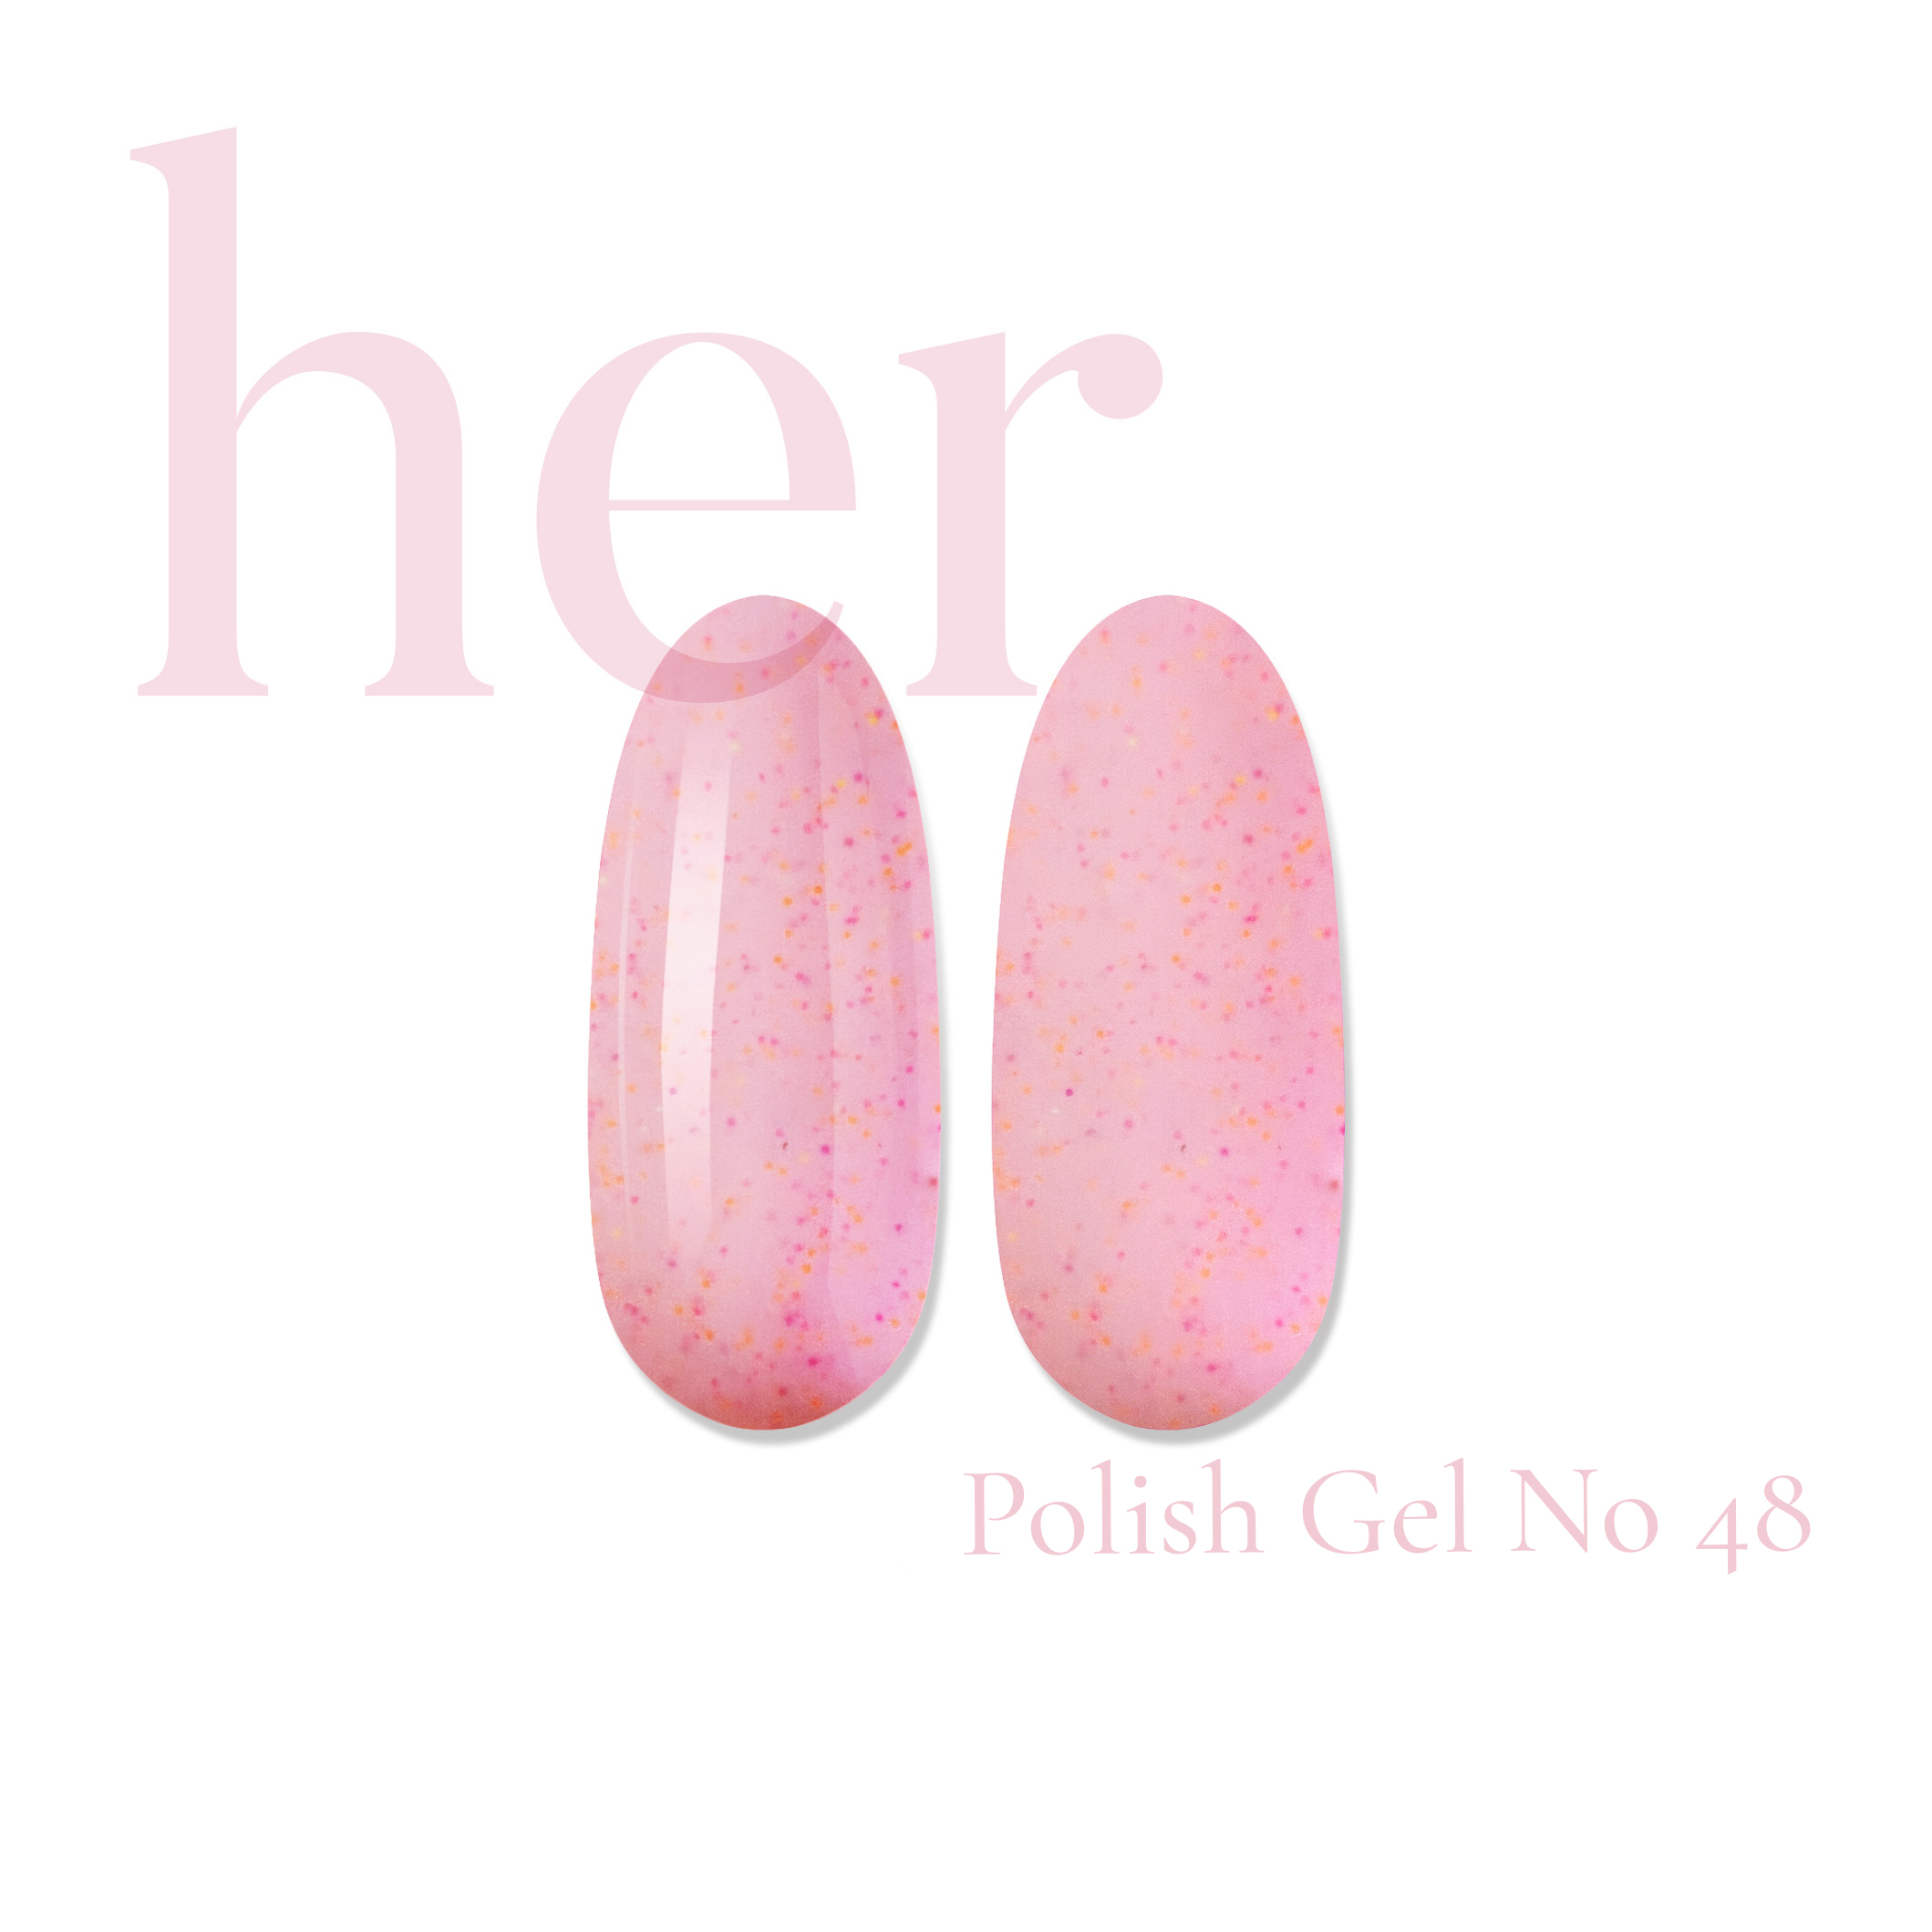 Polish Gel –  No 48